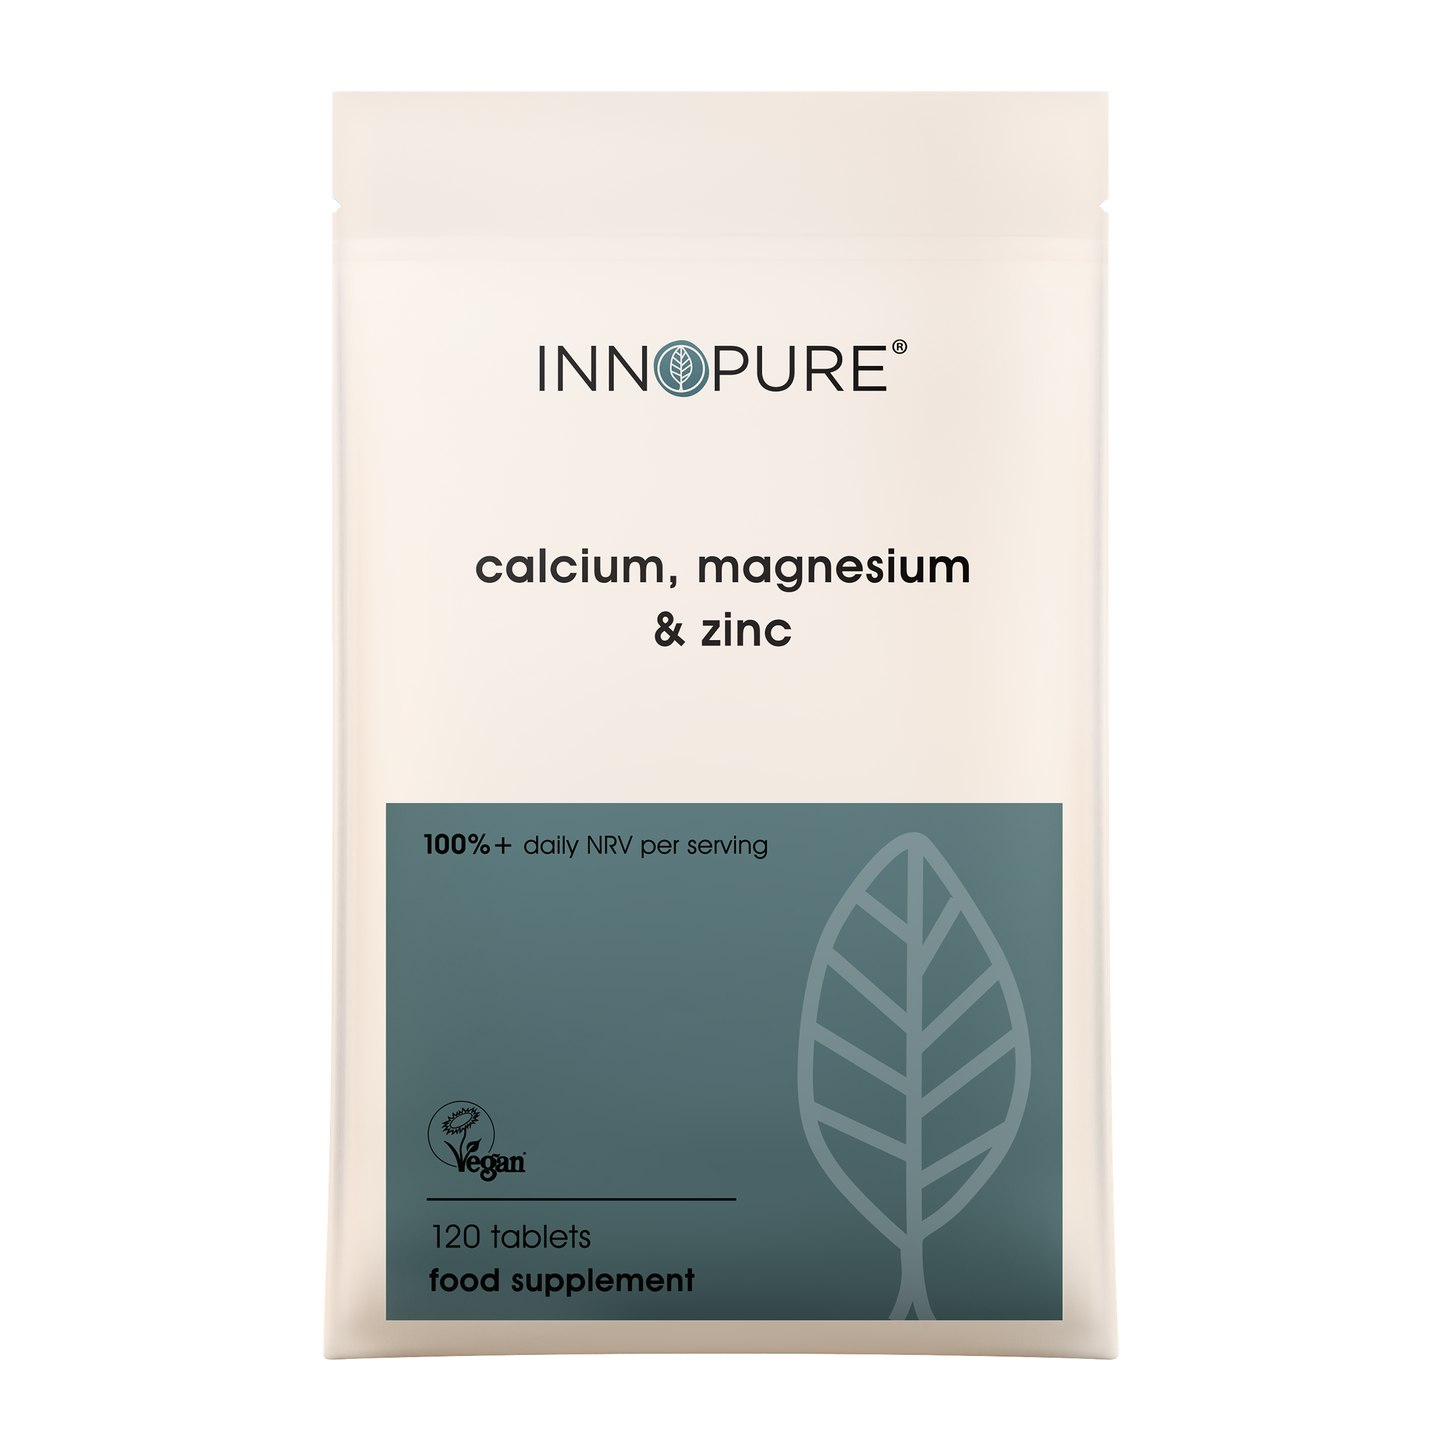 Calcium, Magnesium & Zinc